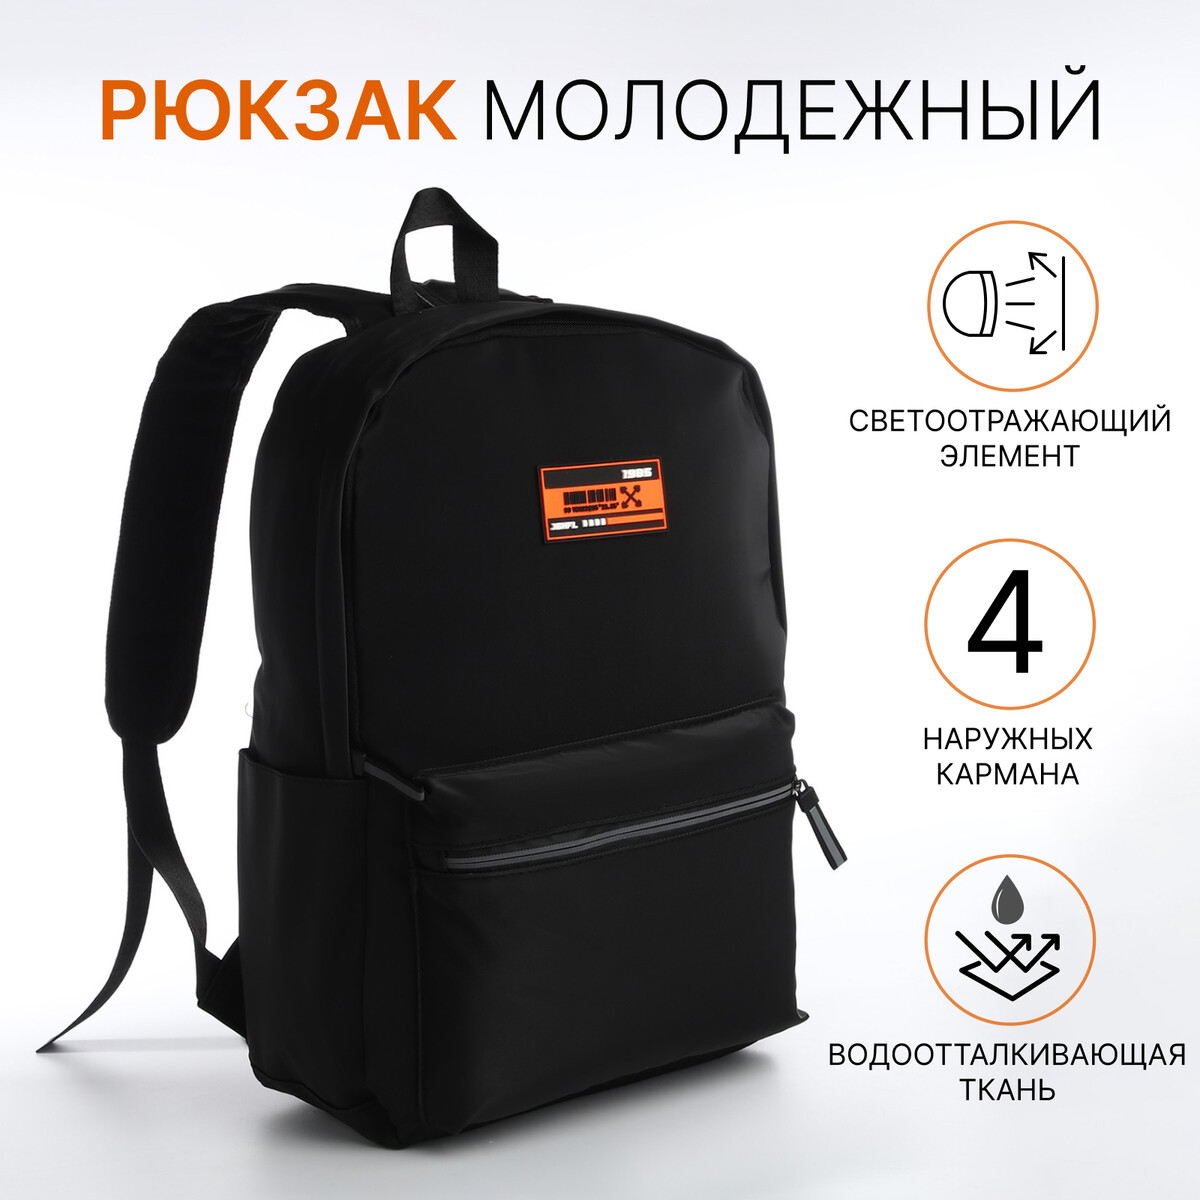 Рюкзак молодежный из текстиля на молнии, 4 кармана, цвет черный/оранжевый сумка для обуви на молнии textura салатовый оранжевый